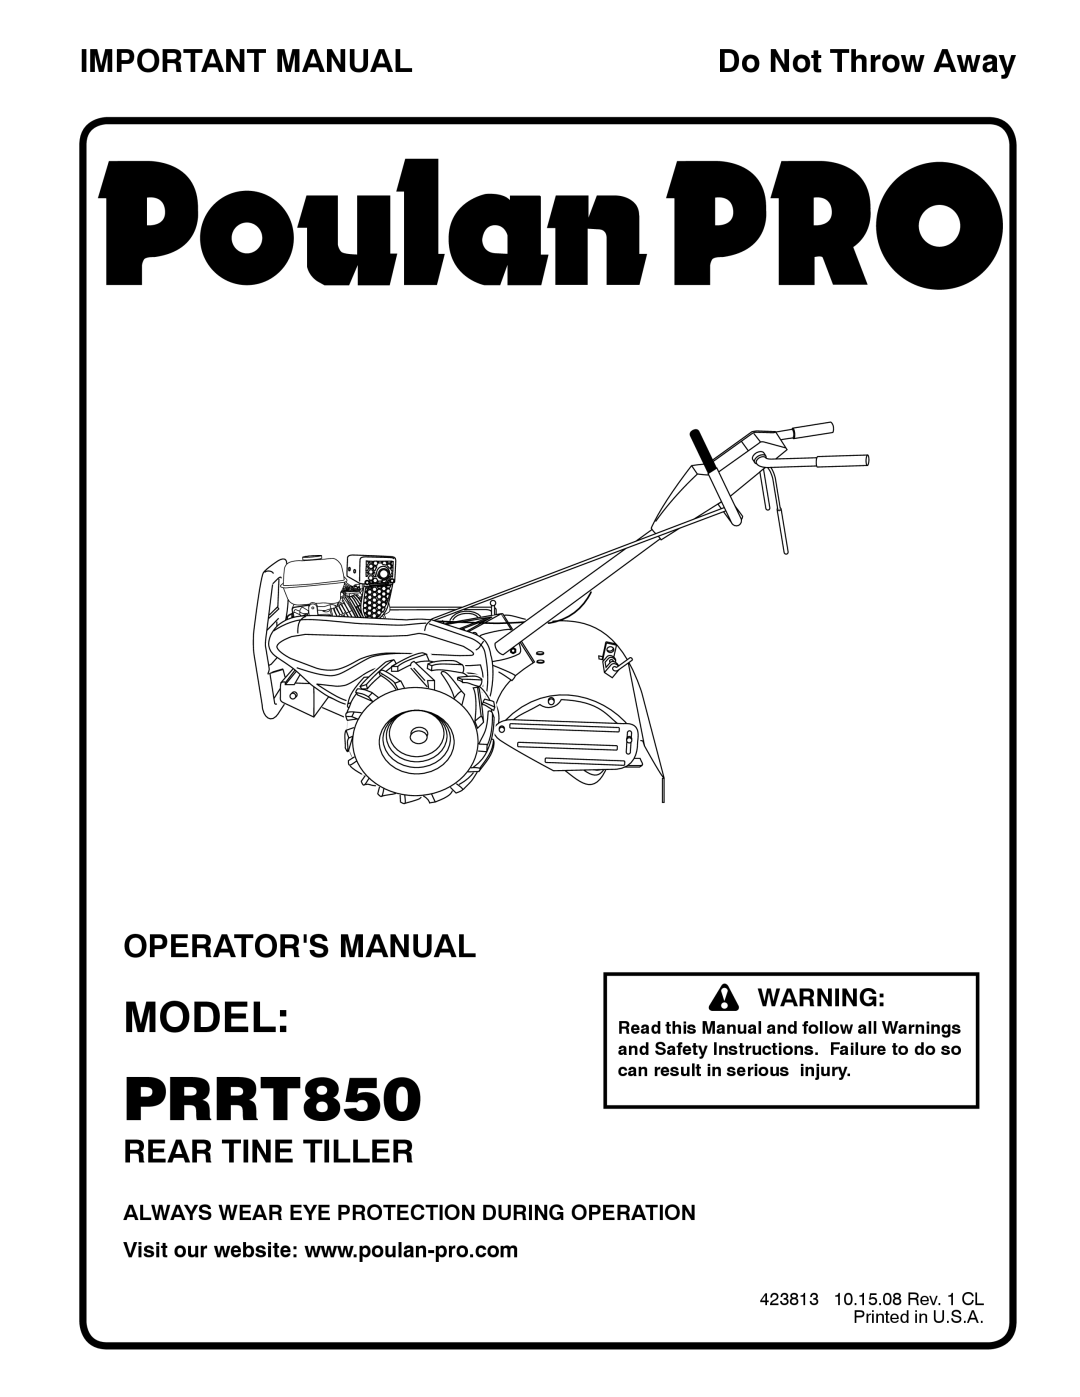 Poulan 423813 manual Model, Important Manual, Operators Manual, Rear Tine Tiller, Do Not Throw Away, PRRT850 